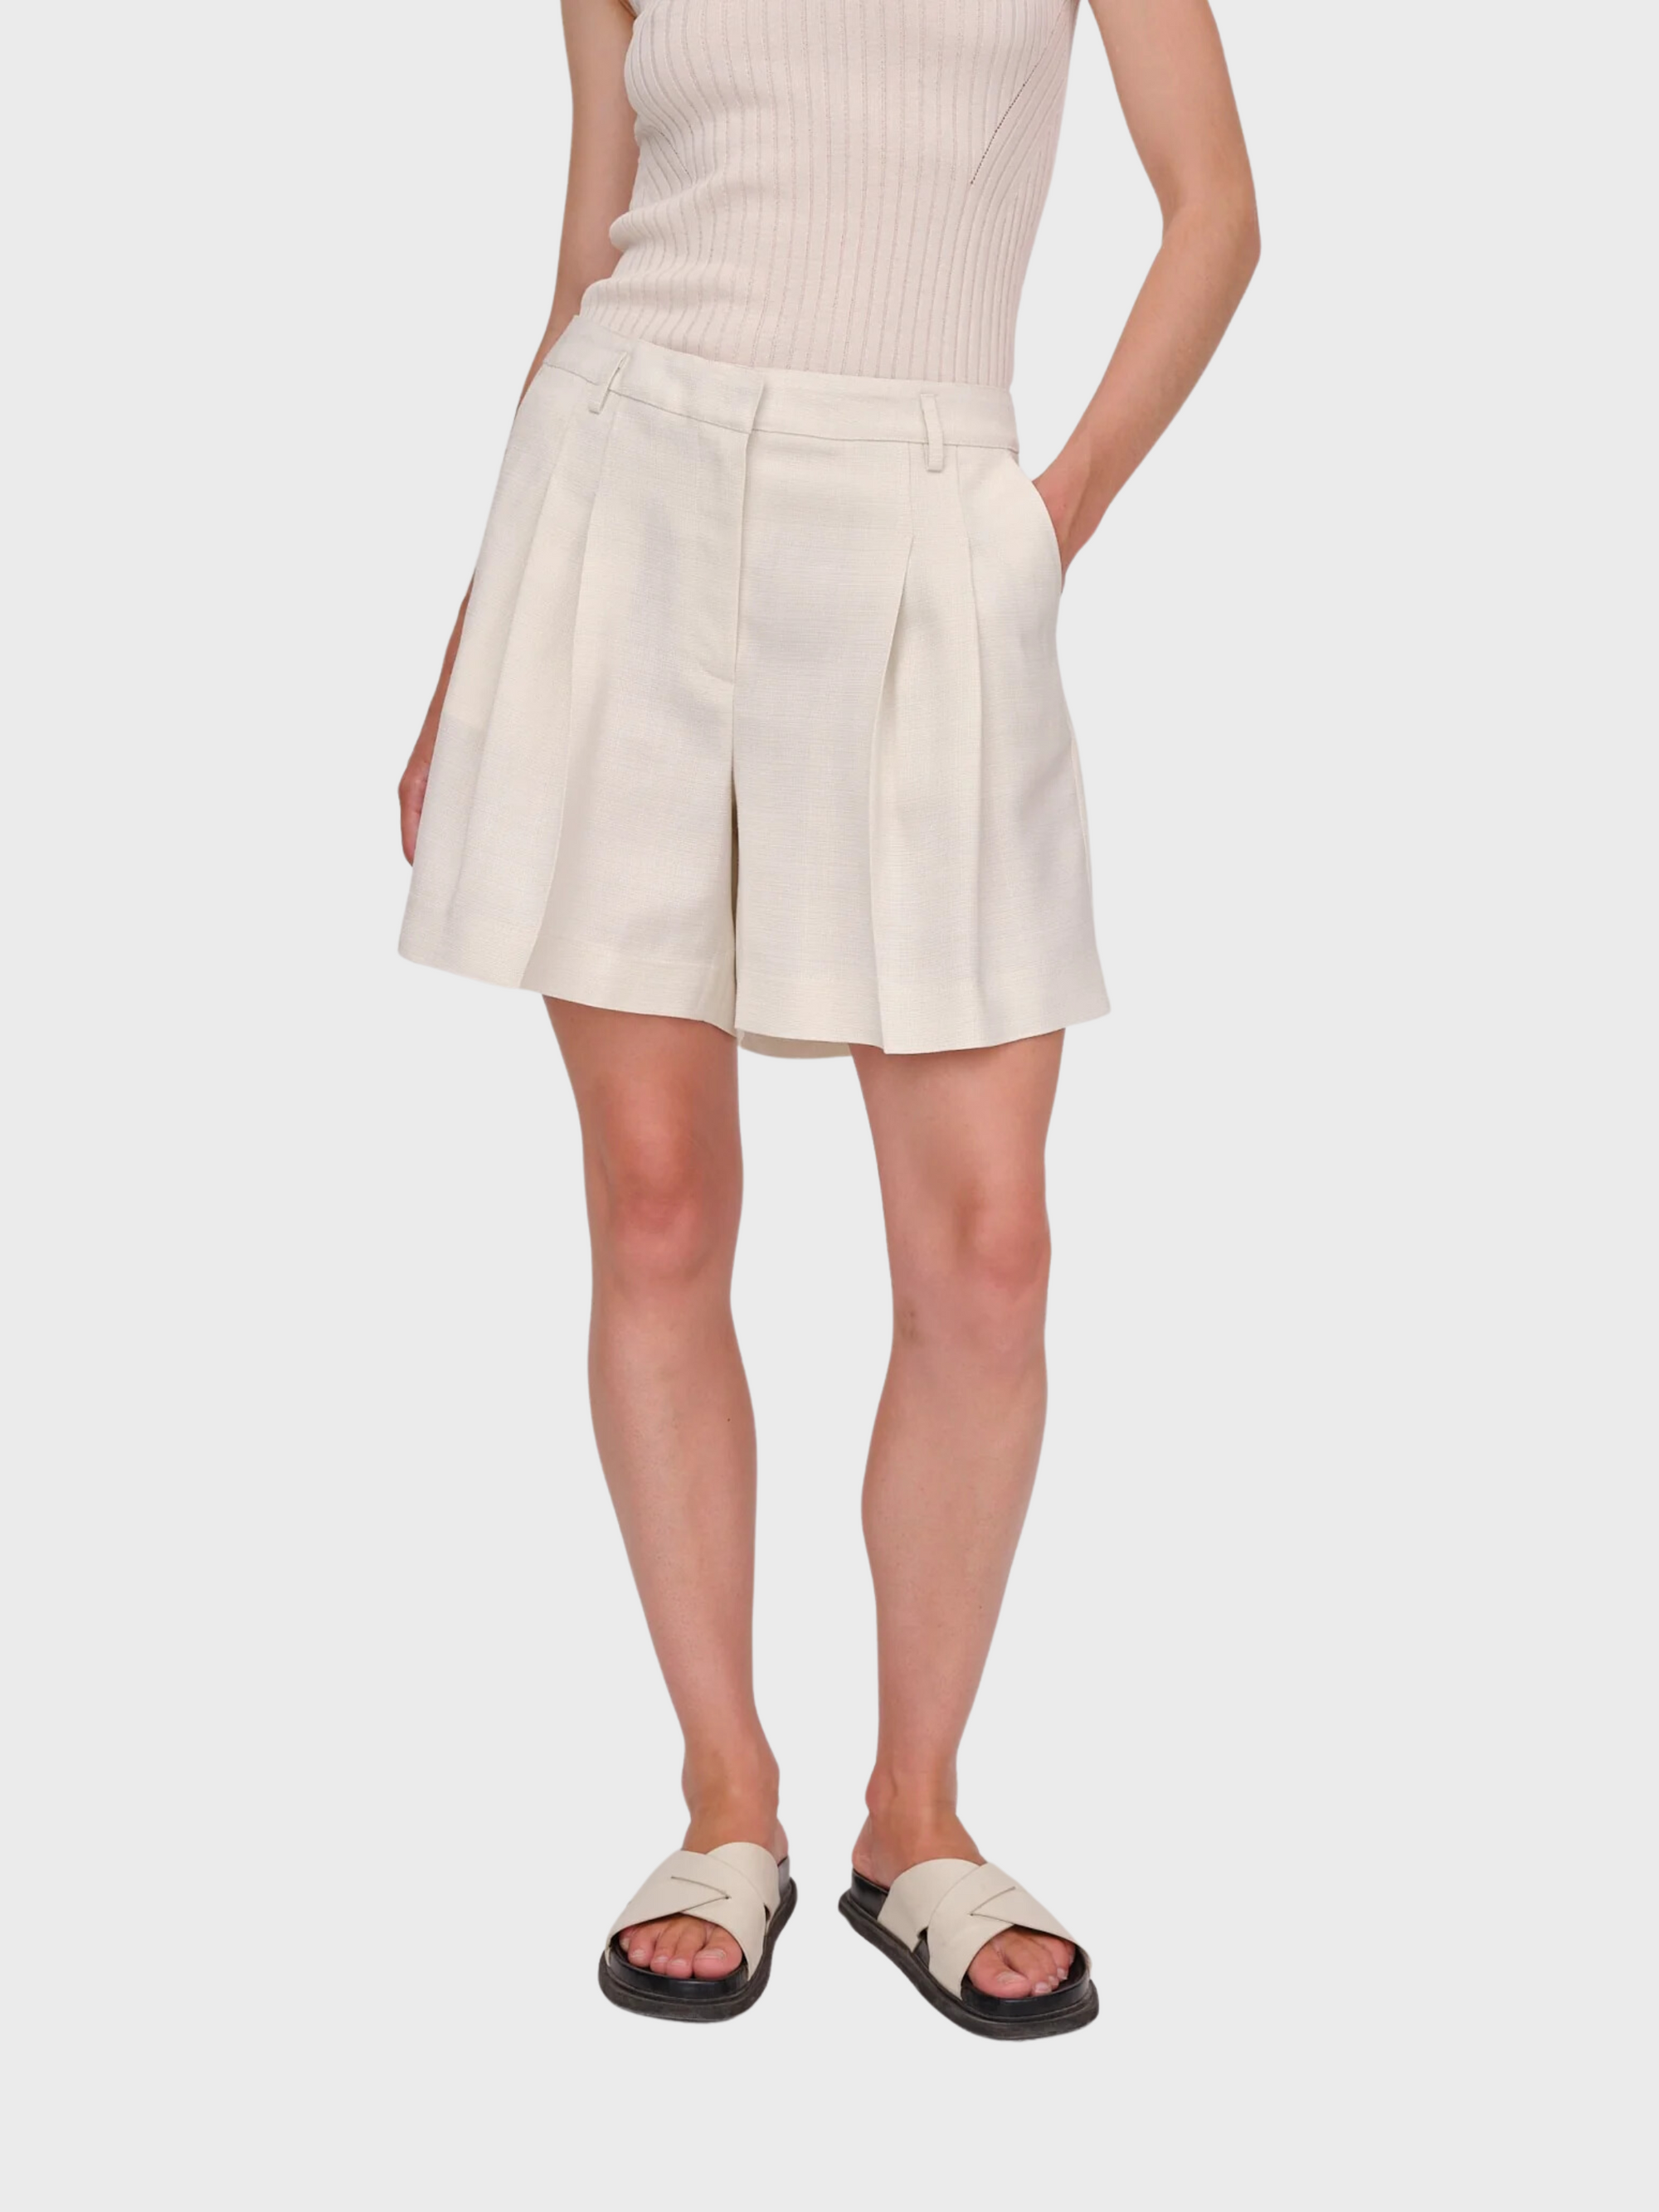 Herskind Lena Shorts Medium White-Shorts-32-West of Woodward Boutique-Vancouver-Canada